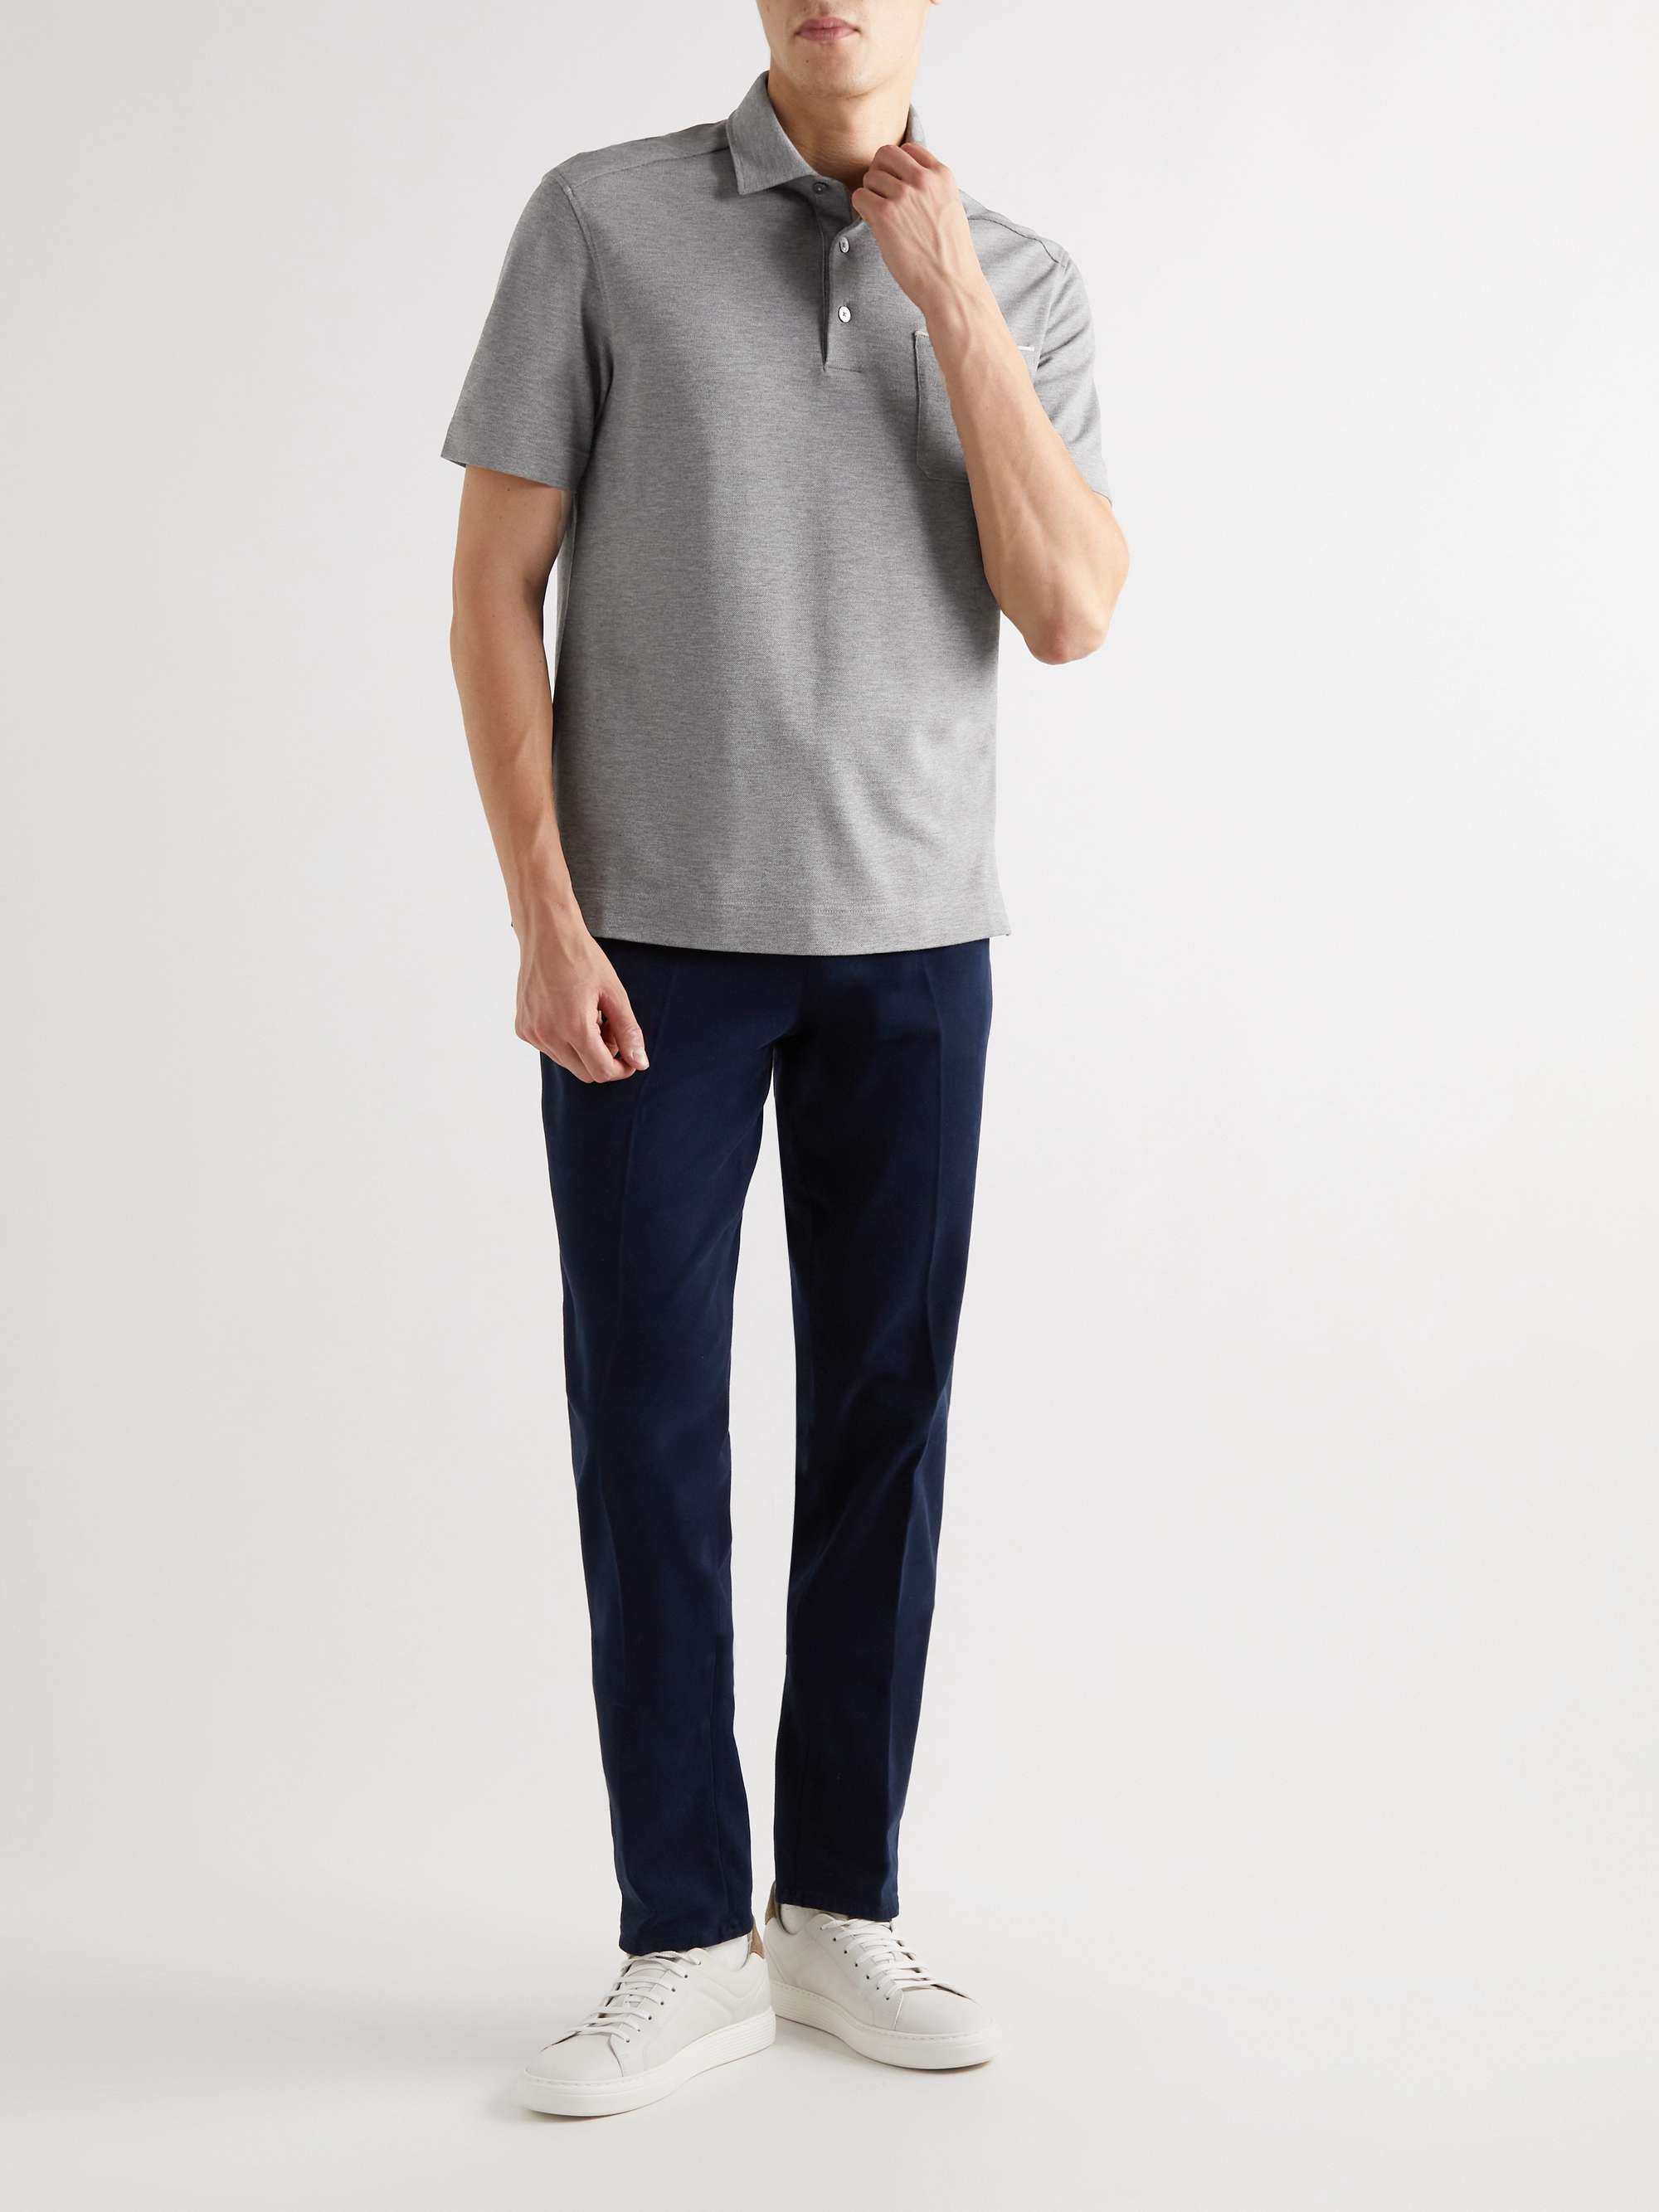 ZEGNA Cotton-Piqué Polo Shirt | MR PORTER